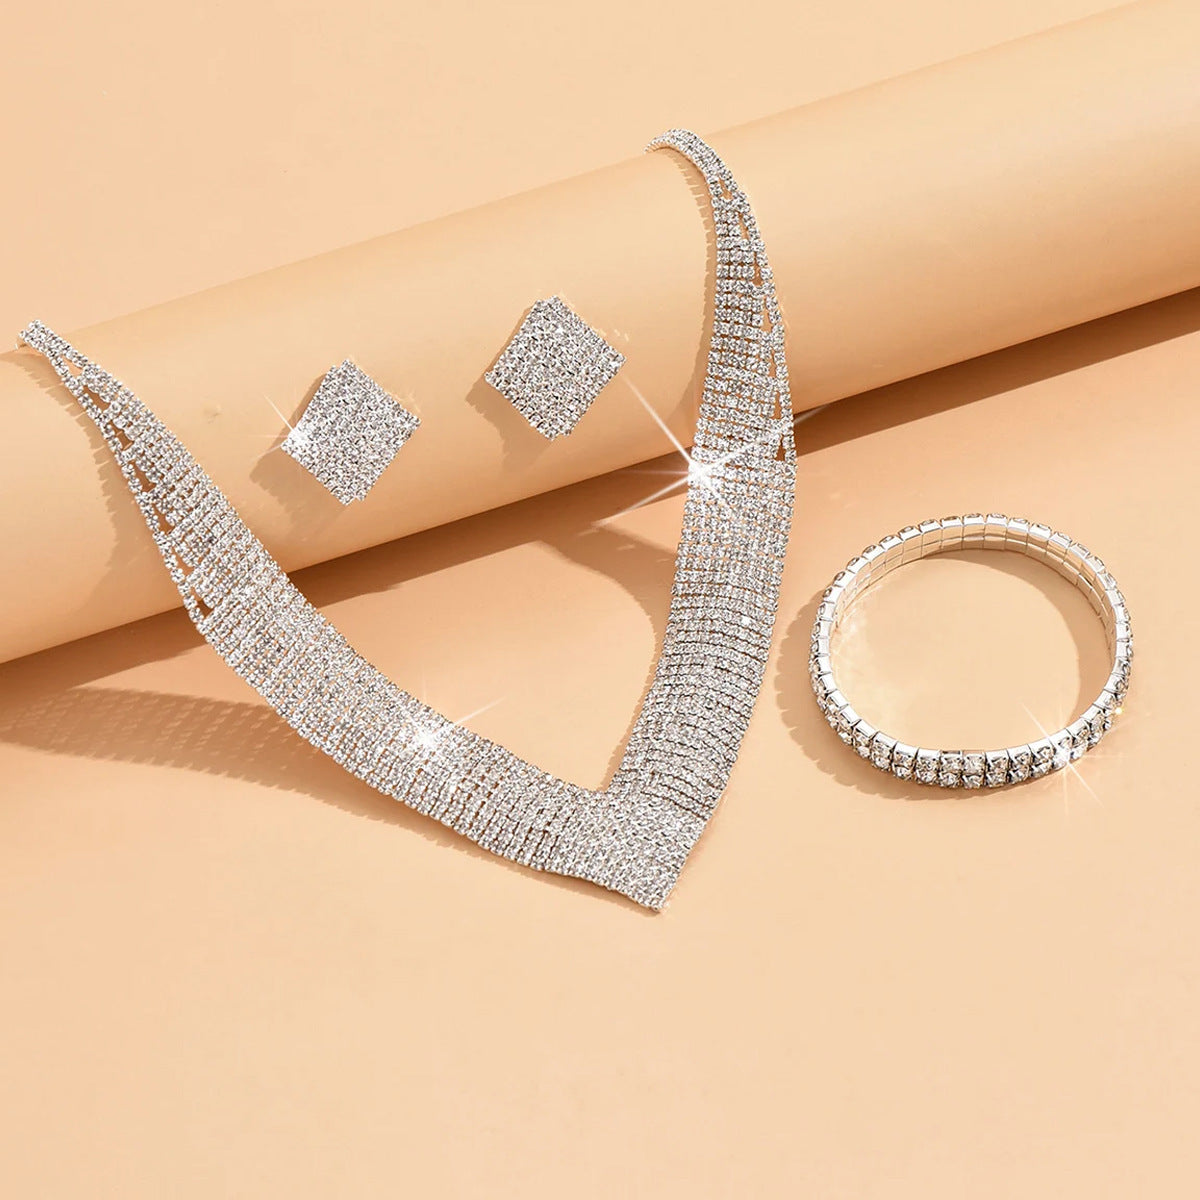 Light luxury rhinestone silver-plated earrings necklace bracelet bridal jewelry